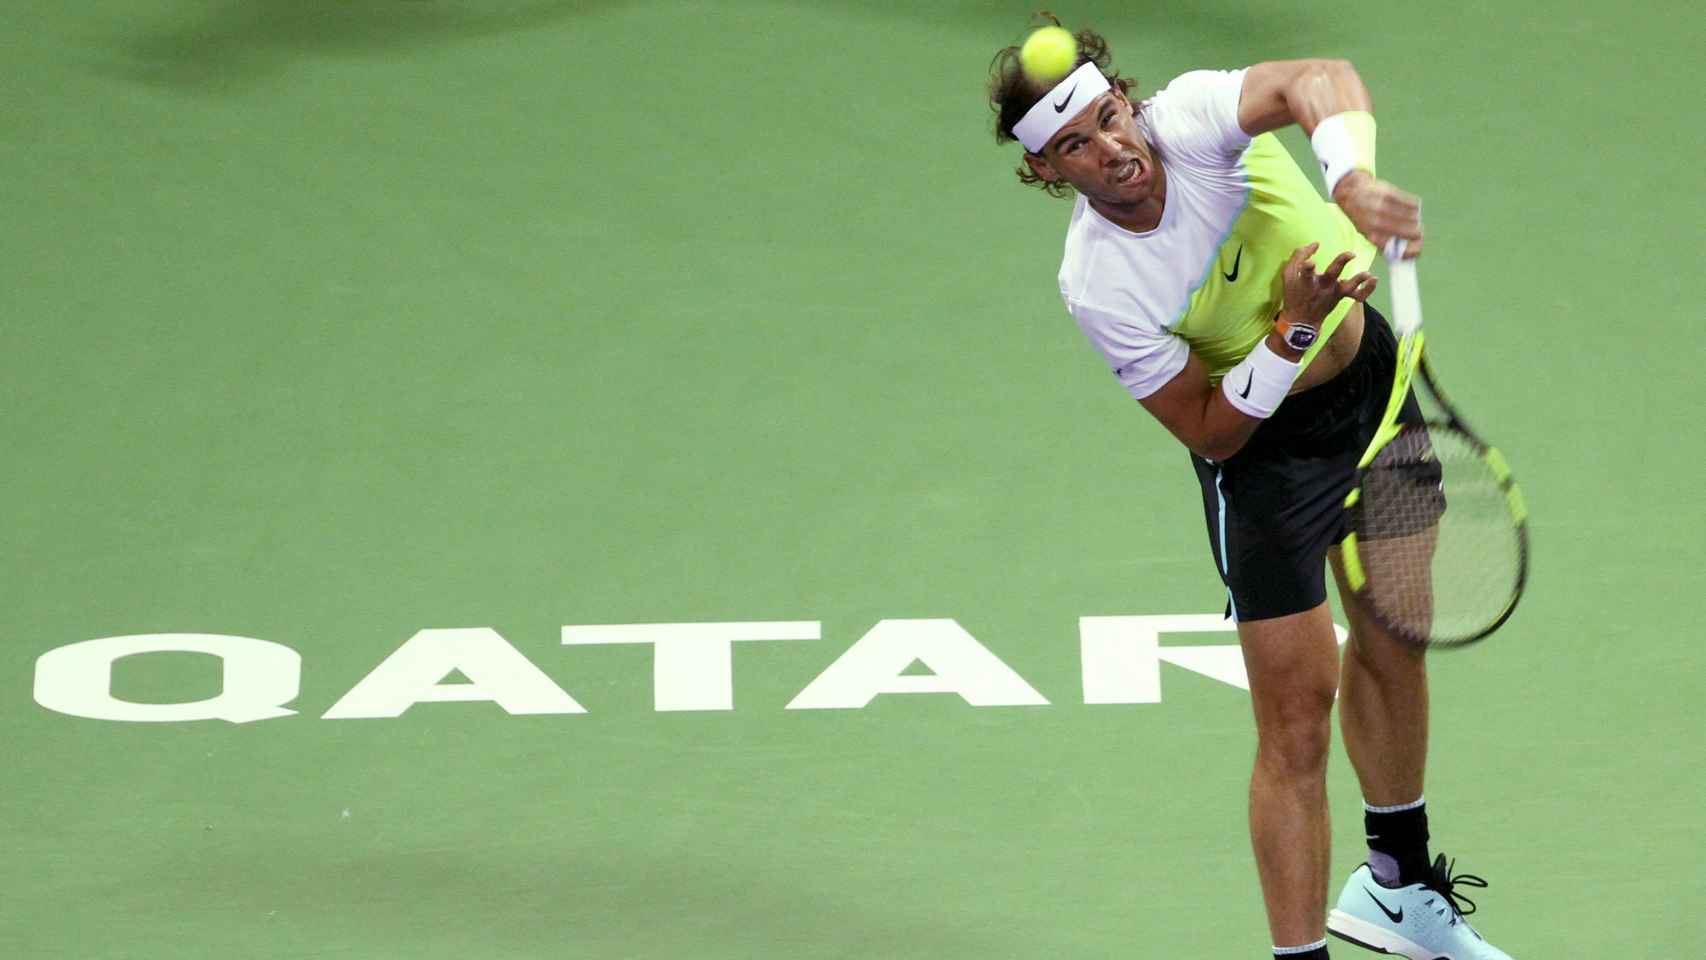 Nadal golpea la pelota durante su encuentro ante Djokovic en Doha.